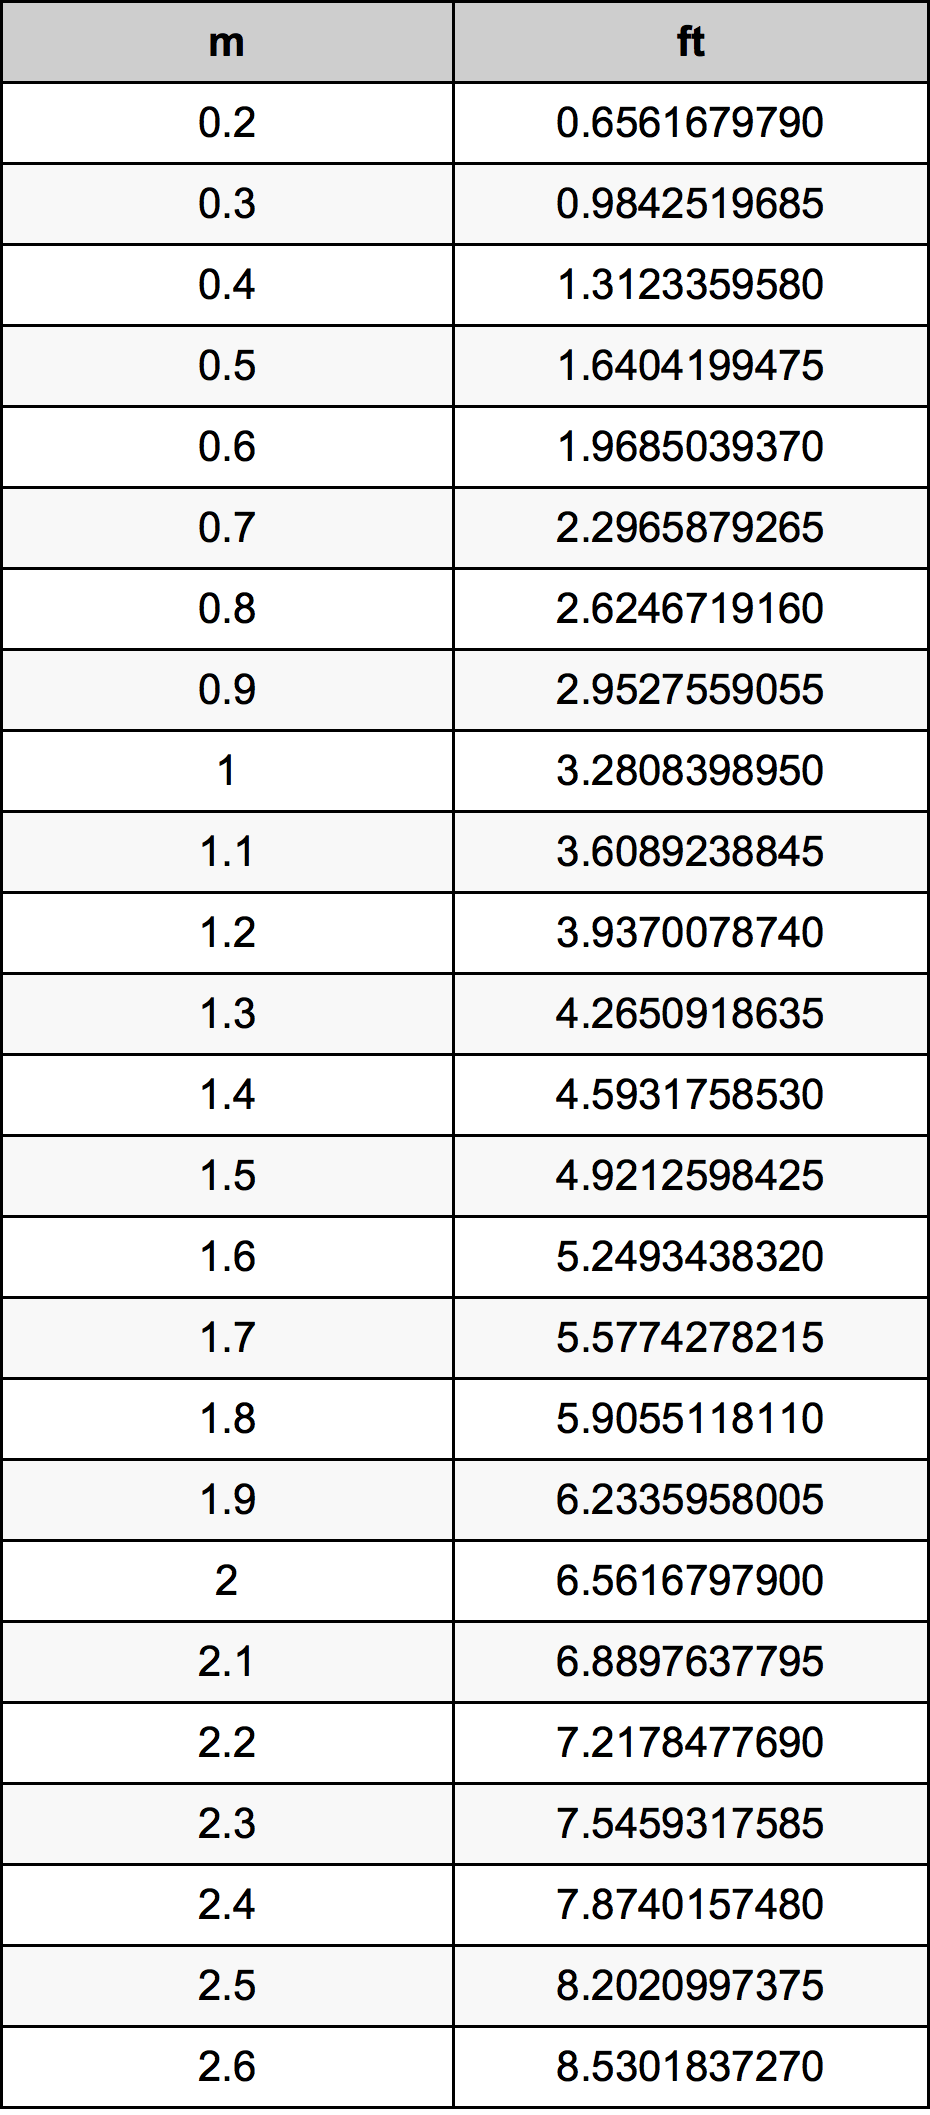 1.4 Metru tabelul de conversie